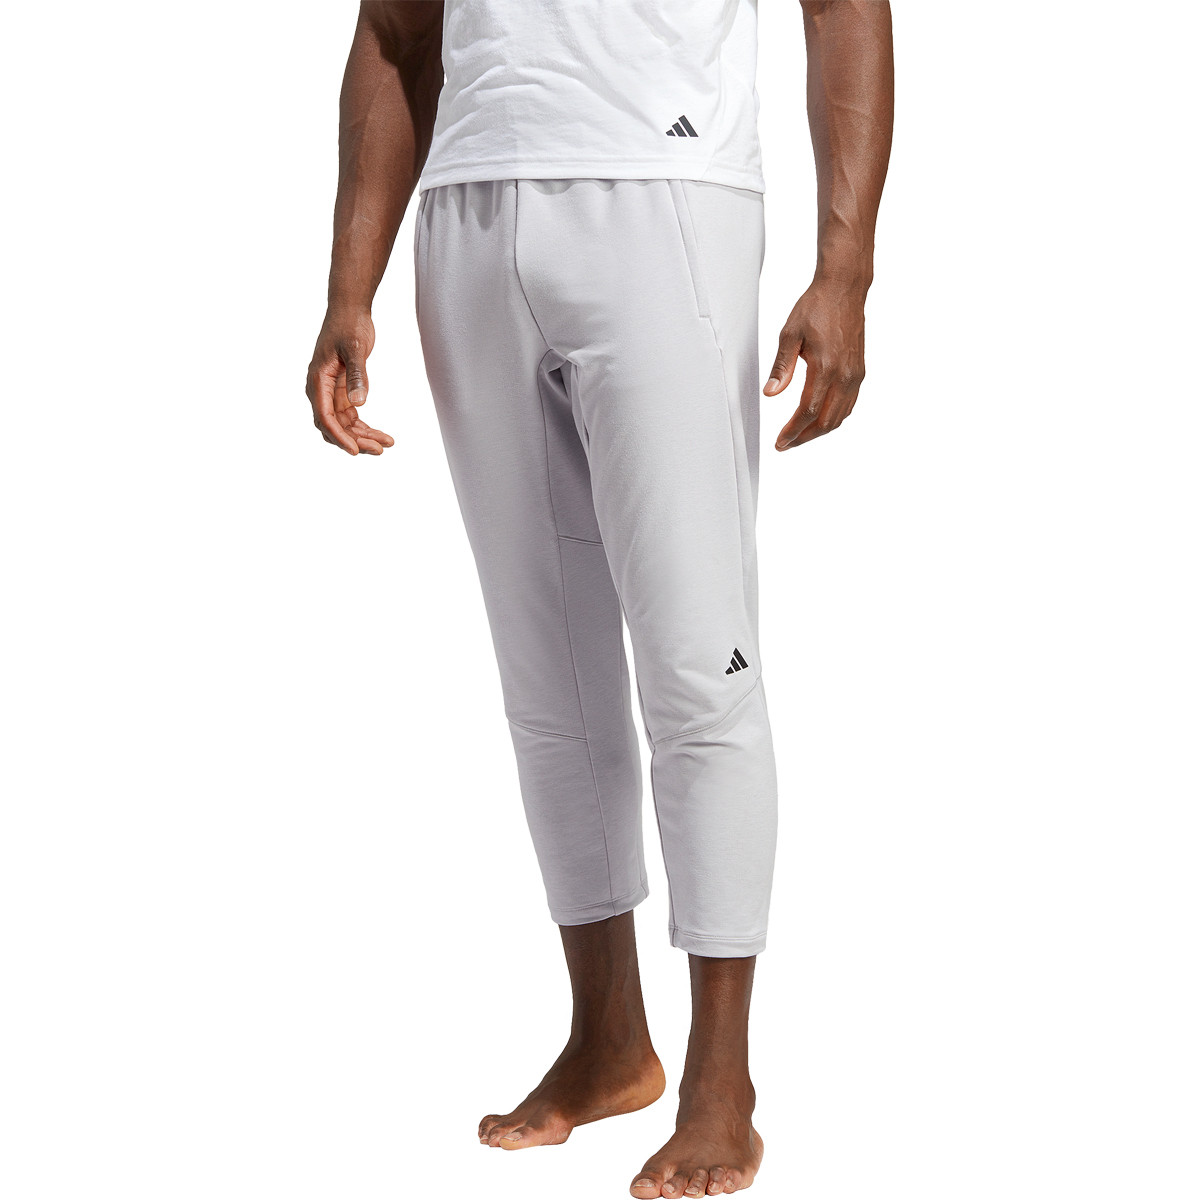  adidas Men's Designed 4 Yoga 7/8 Training Pants, Black,  XX-Large : Clothing, Shoes & Jewelry